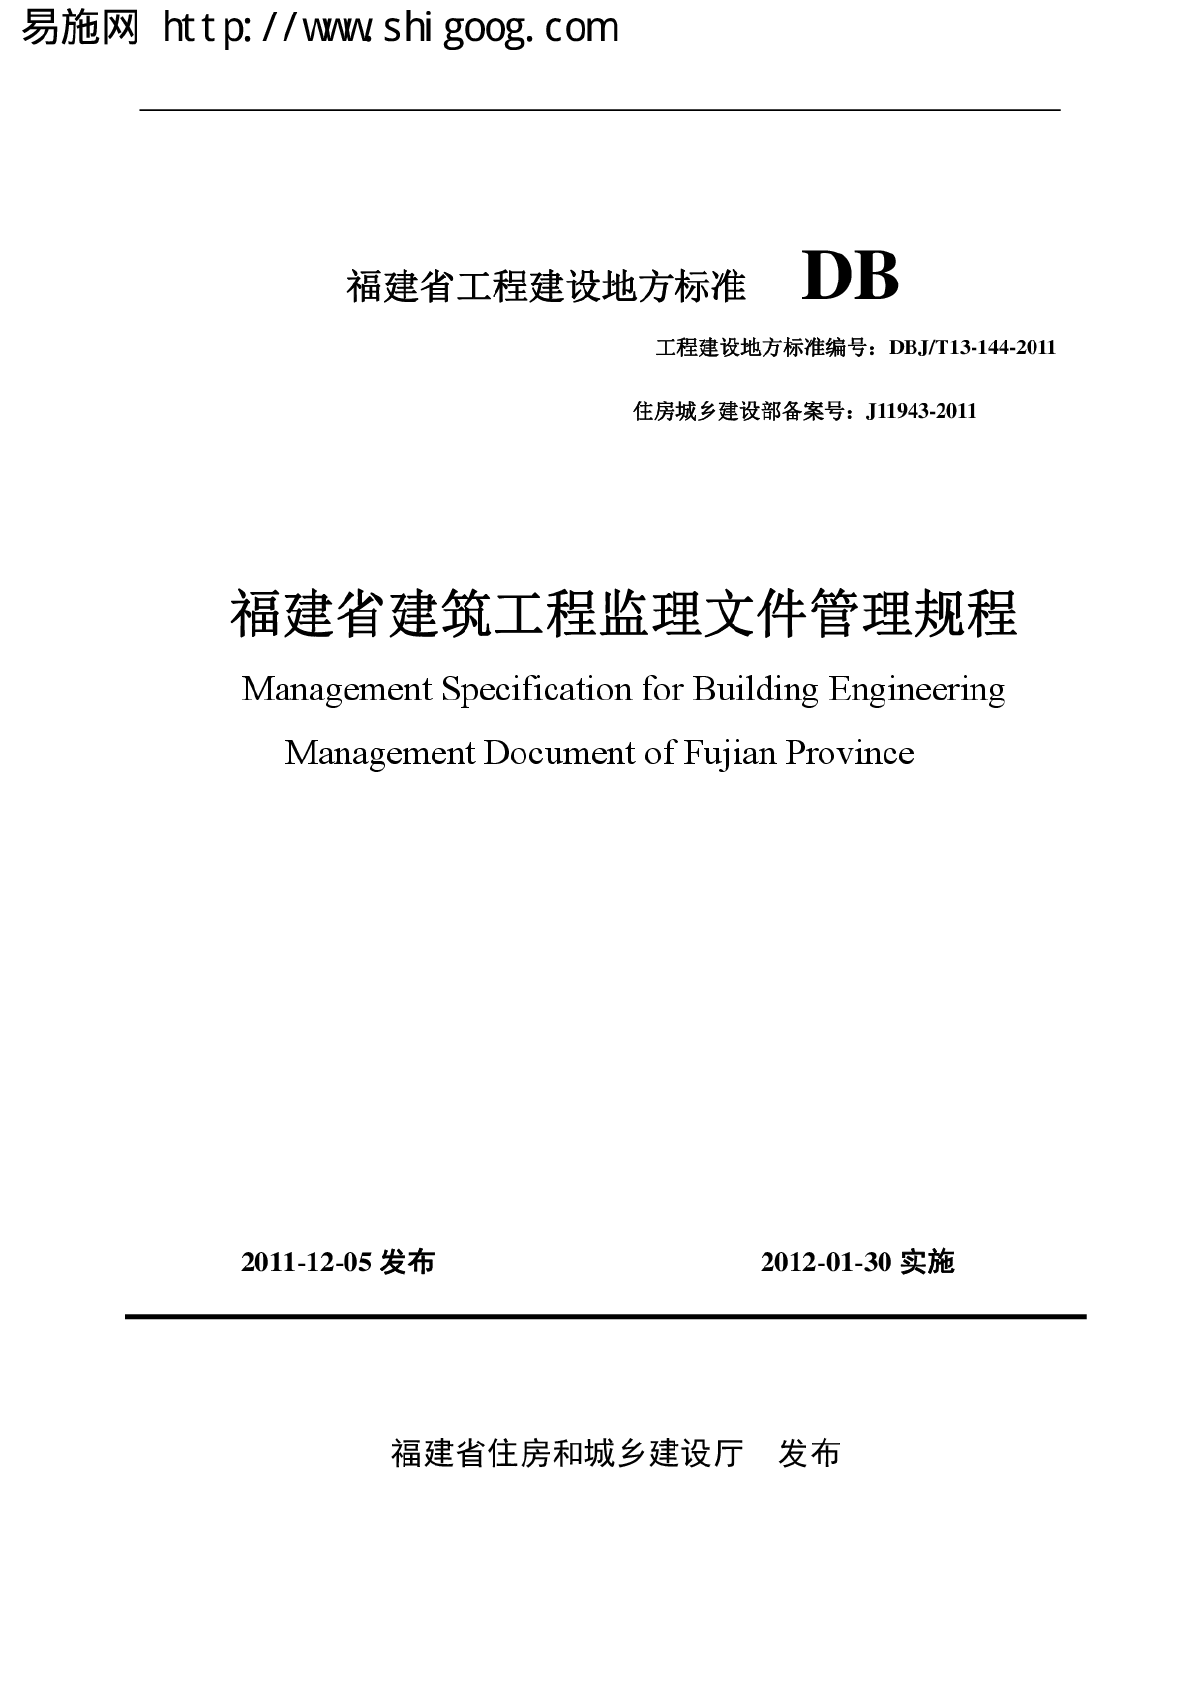 DBJT13-144-2011 福建省建筑工程监理文件管理规程